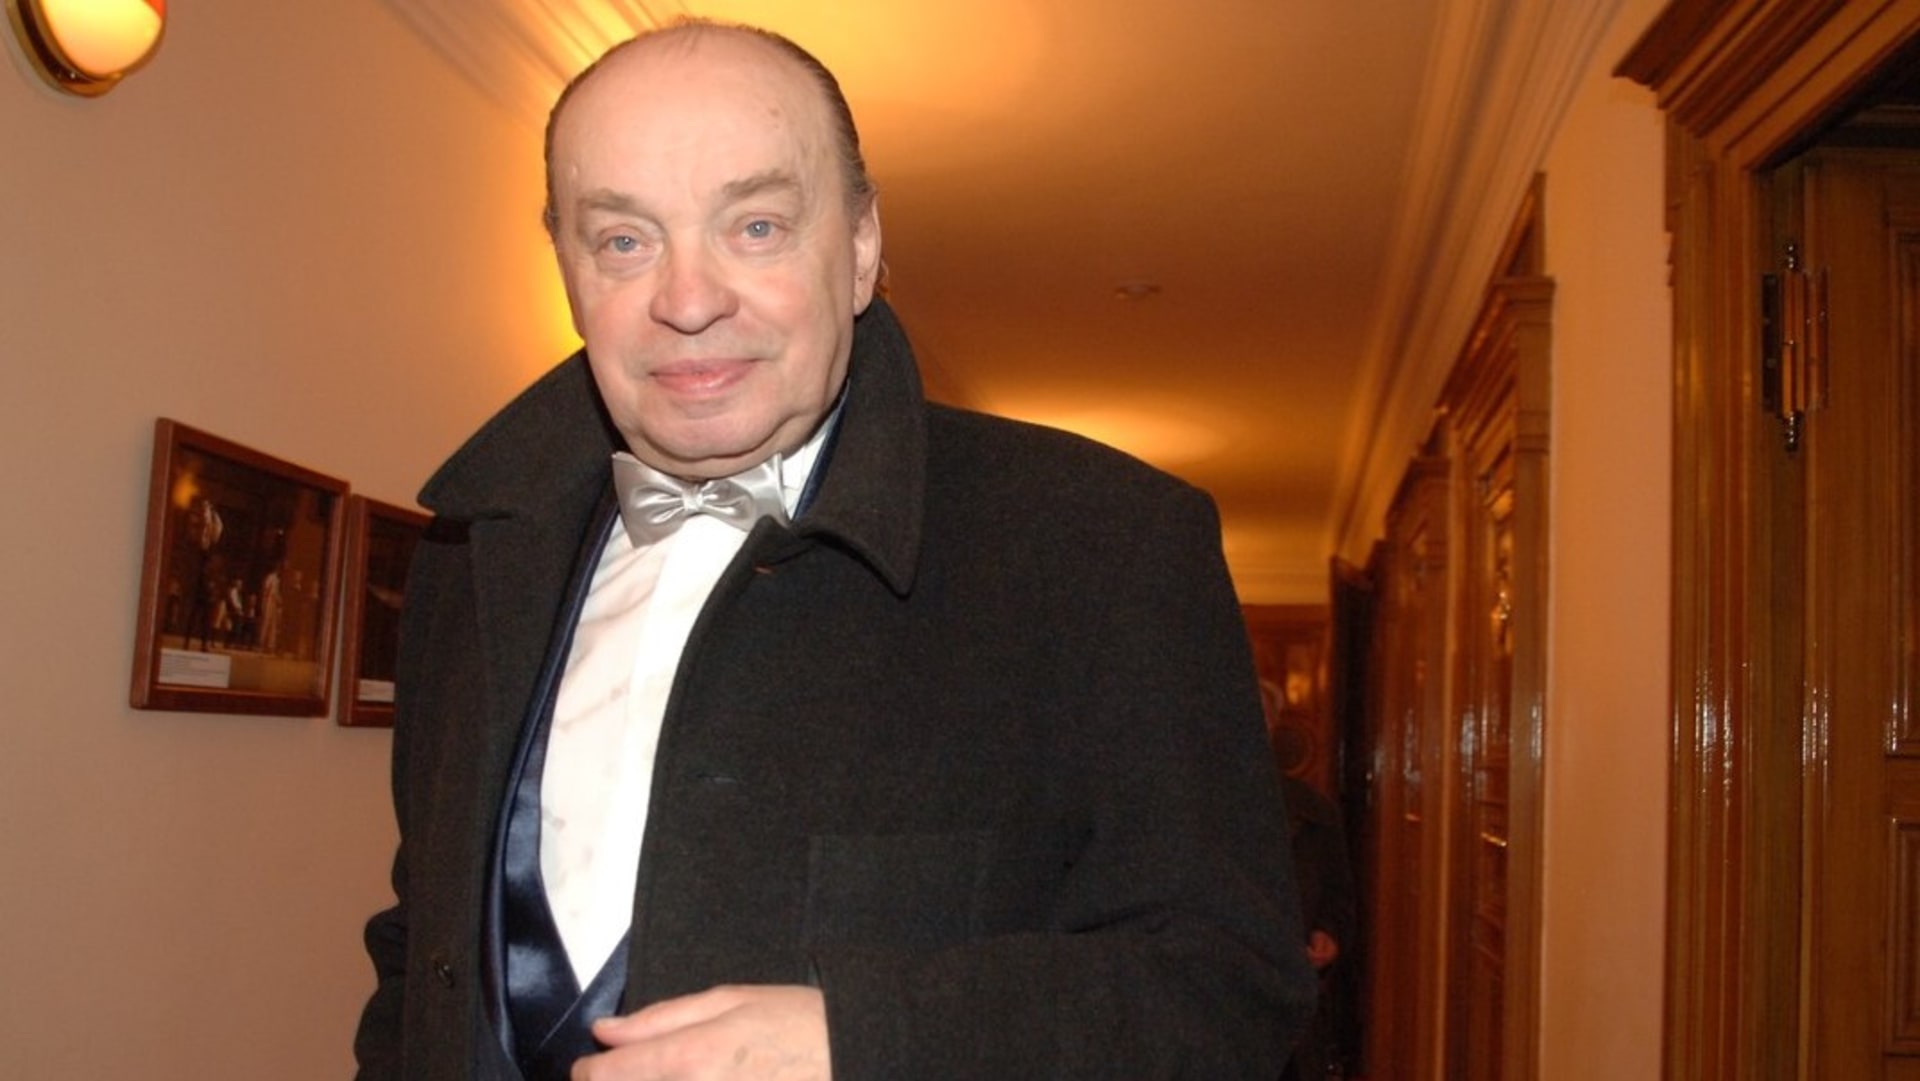 Herec Jan Teplý trpěl zákeřnou rakovinou. Zemřel 25. února 2007 ve věku 75 let.